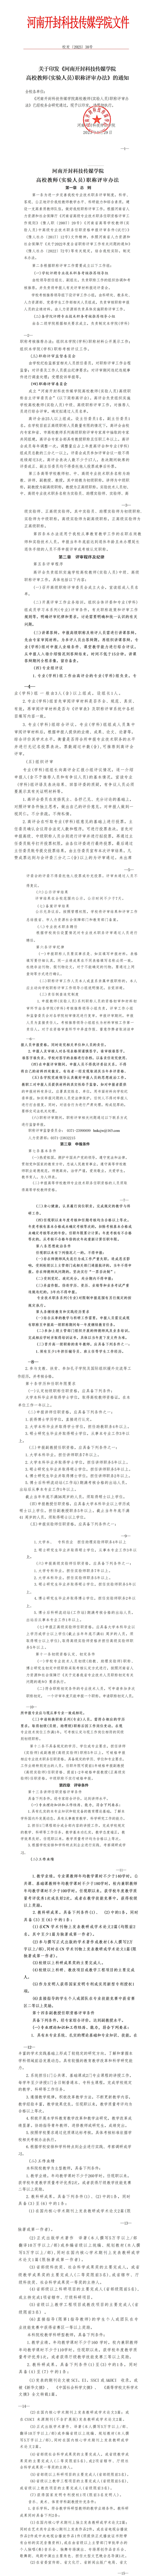 澳网官方网站·「中国」官方网站《高校教师（实验人员）职称评审办法》、《自主评审工作实施方案》_01